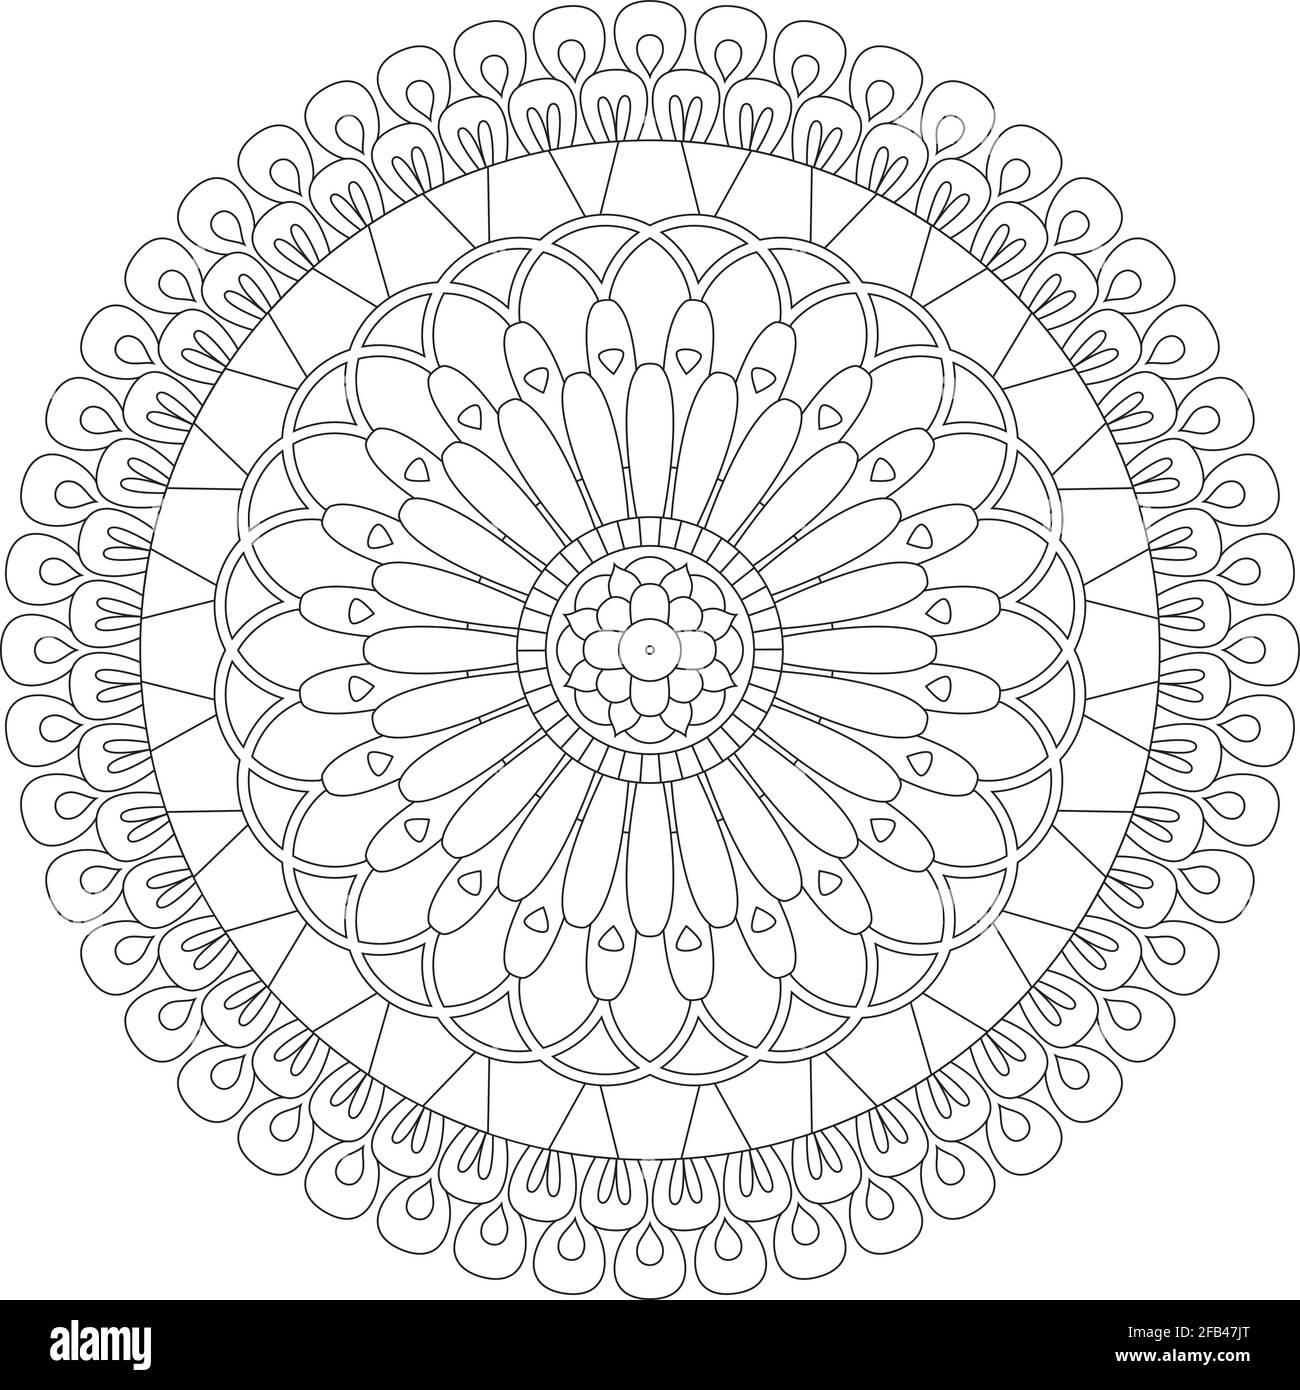 Illustrazione vettoriale di un mandala floreale decorativo per colorazione isolato su sfondo bianco. Illustrazione Vettoriale